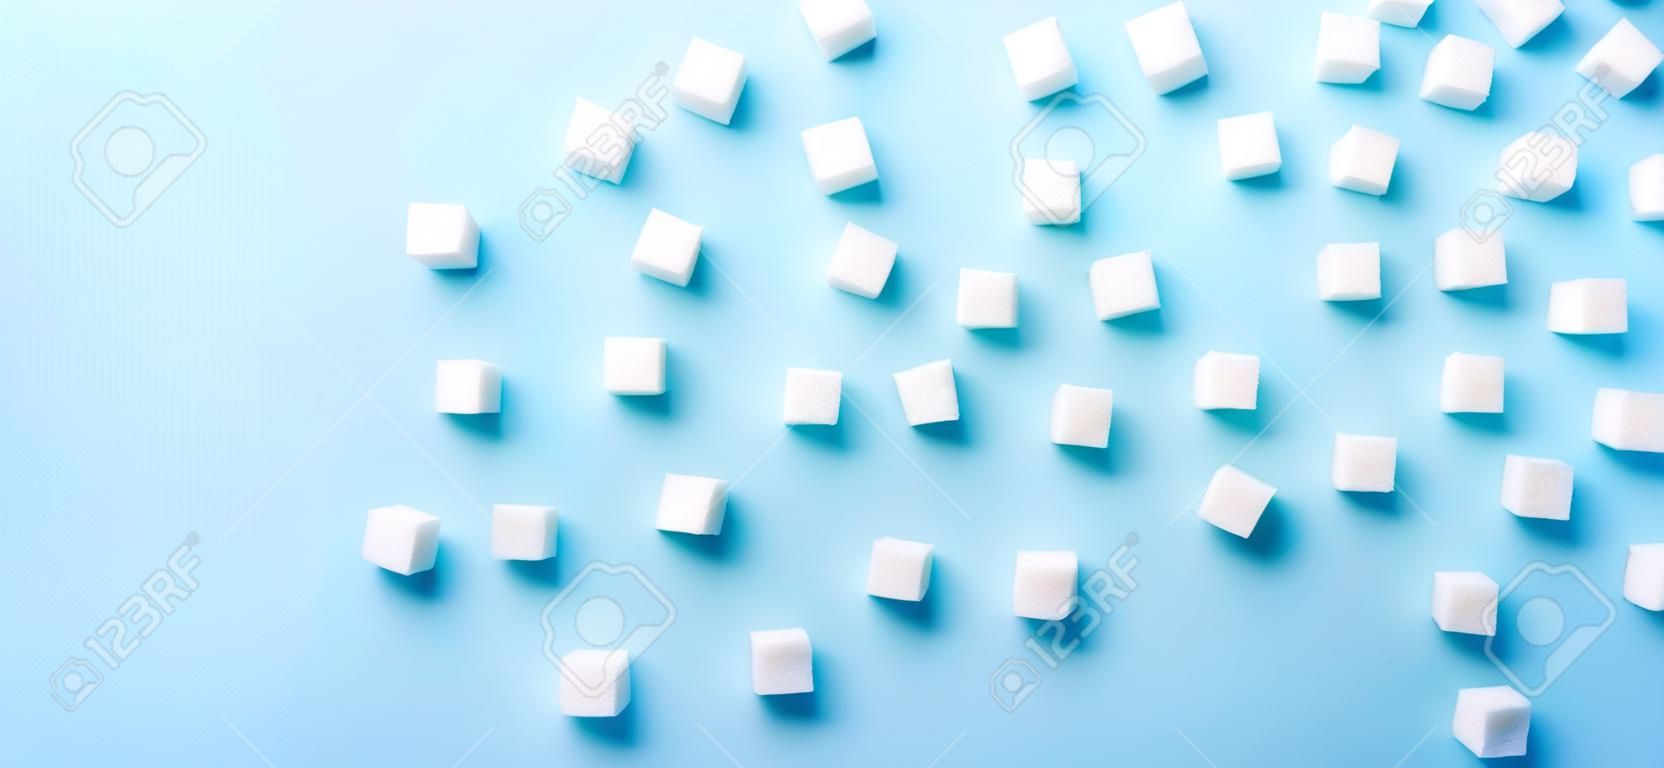 Modèle régulier de cubes de sucre sur fond bleu, bannière à plat avec espace de copie